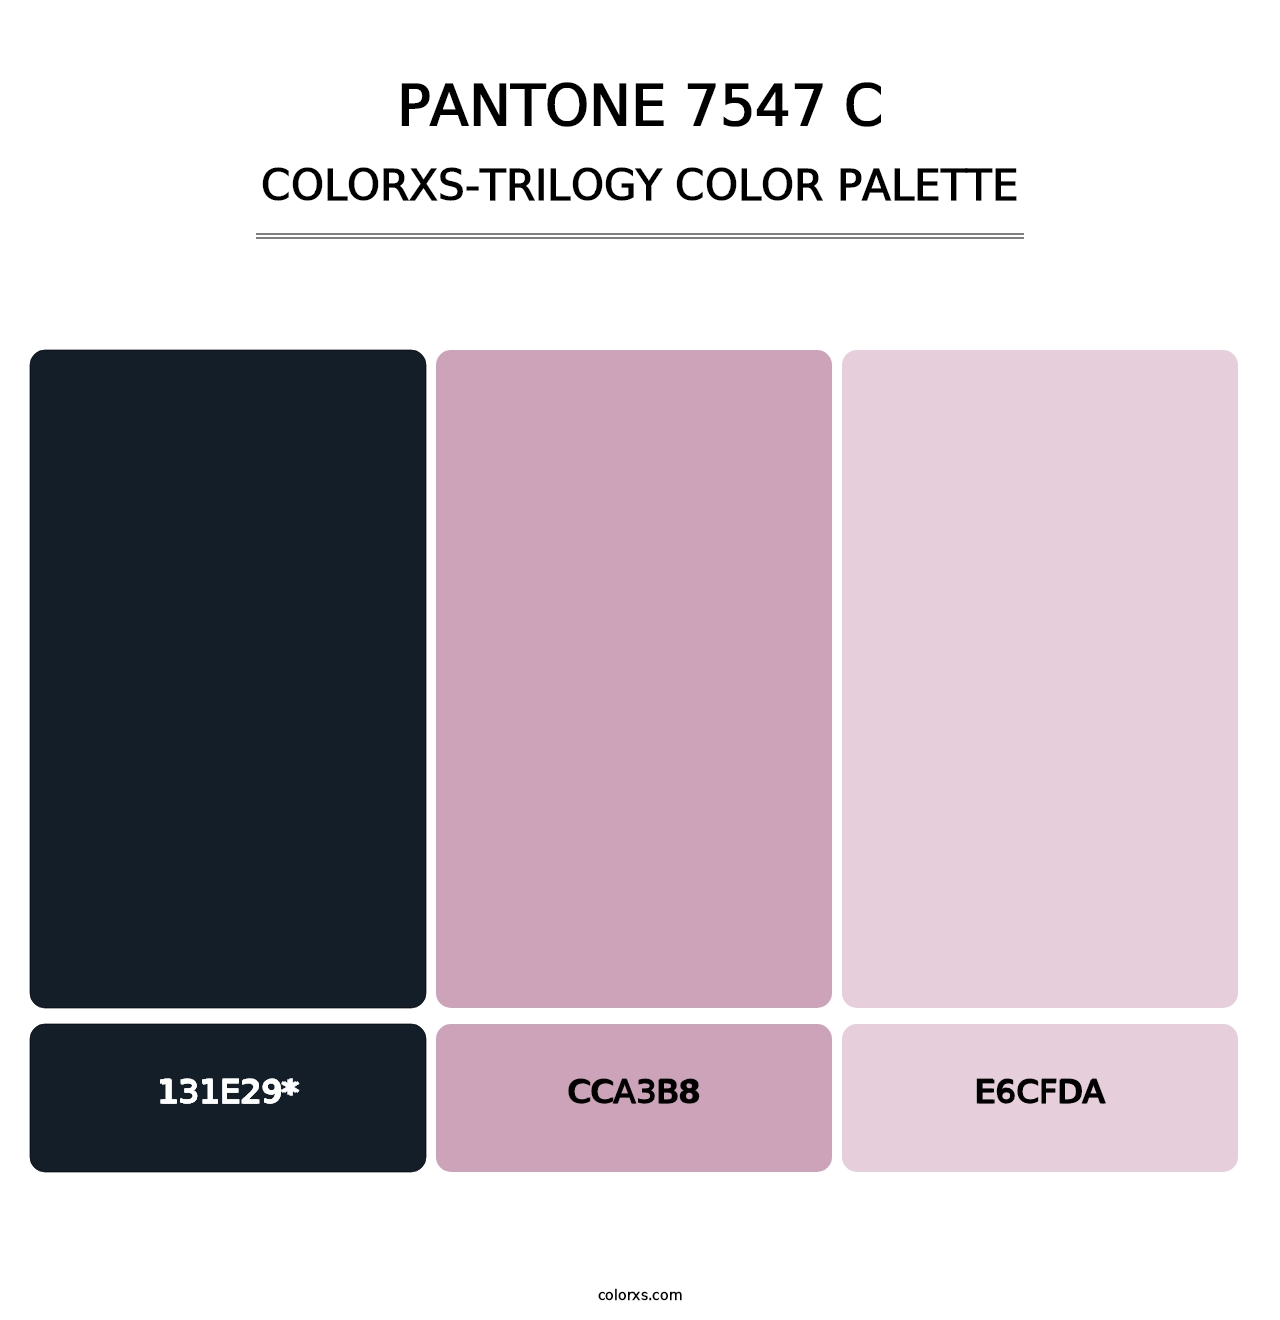 PANTONE 7547 C - Colorxs Trilogy Palette